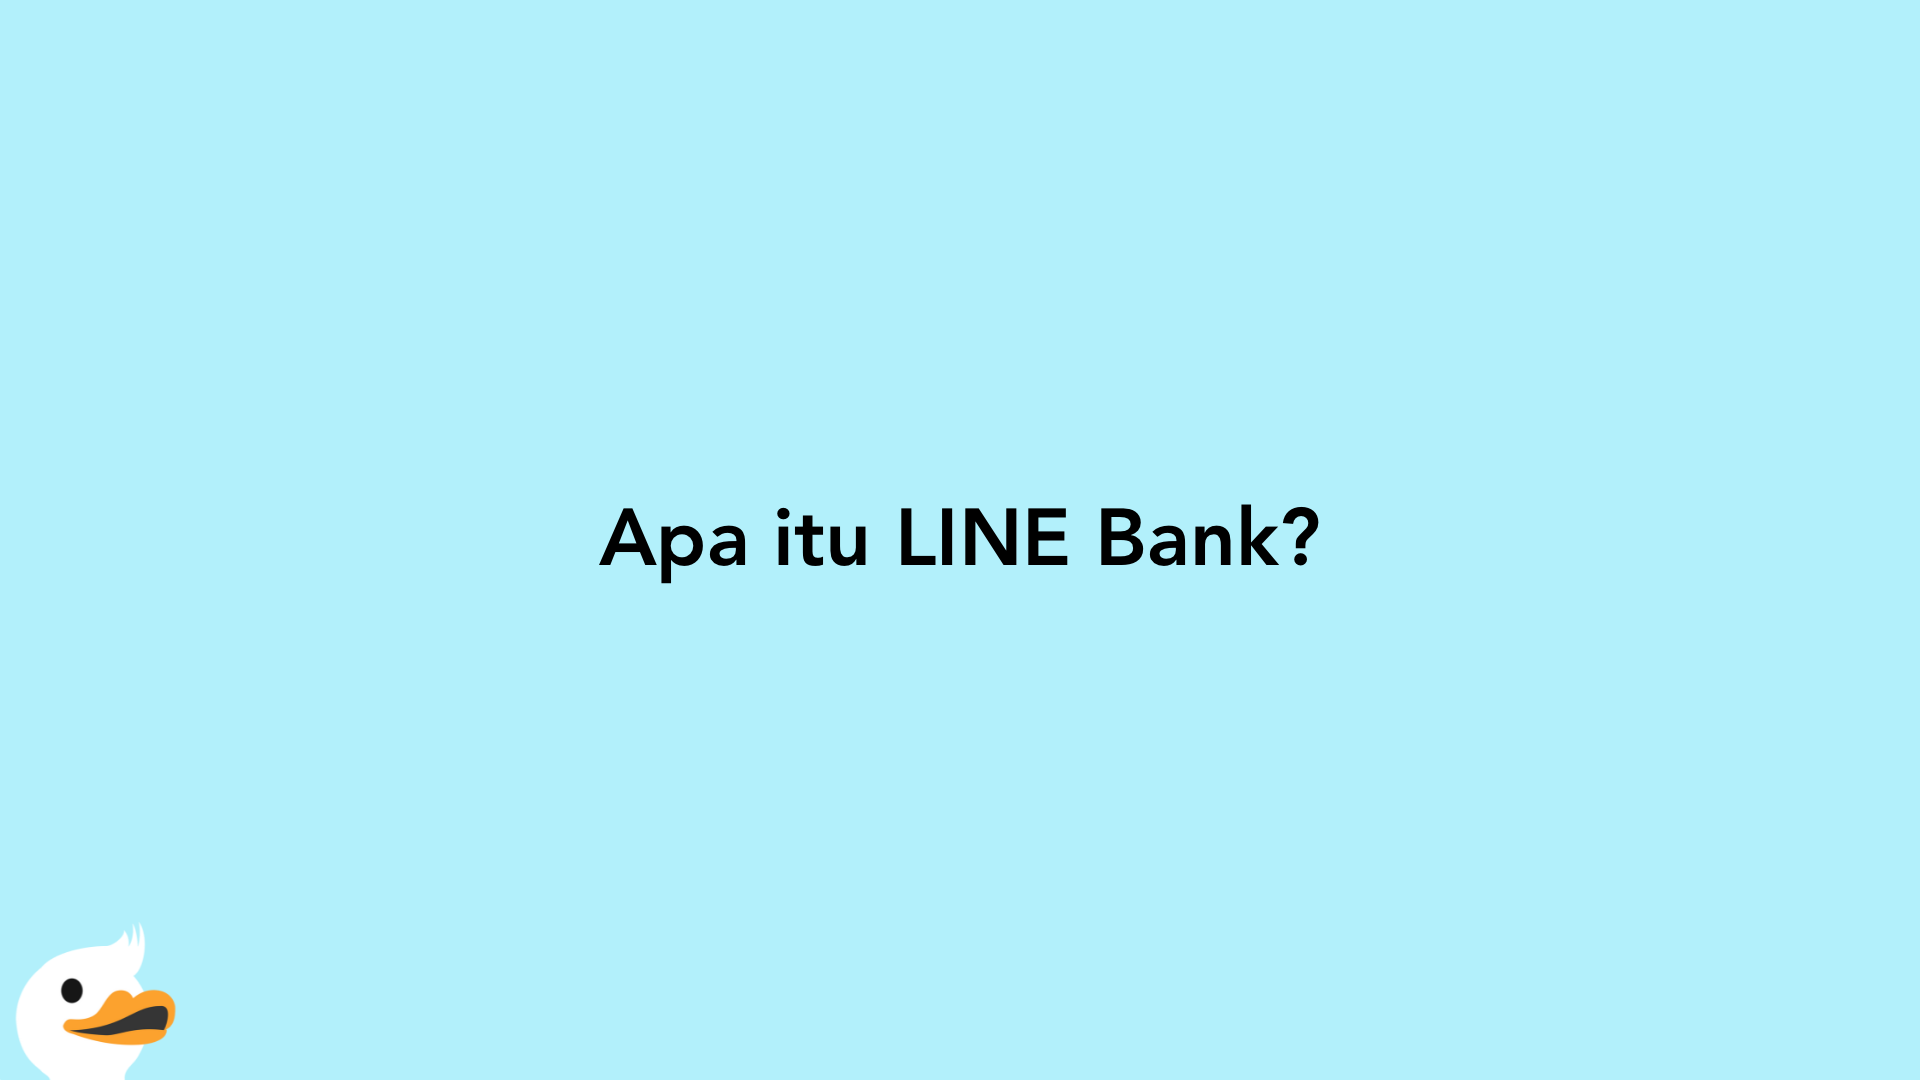 Apa itu LINE Bank?